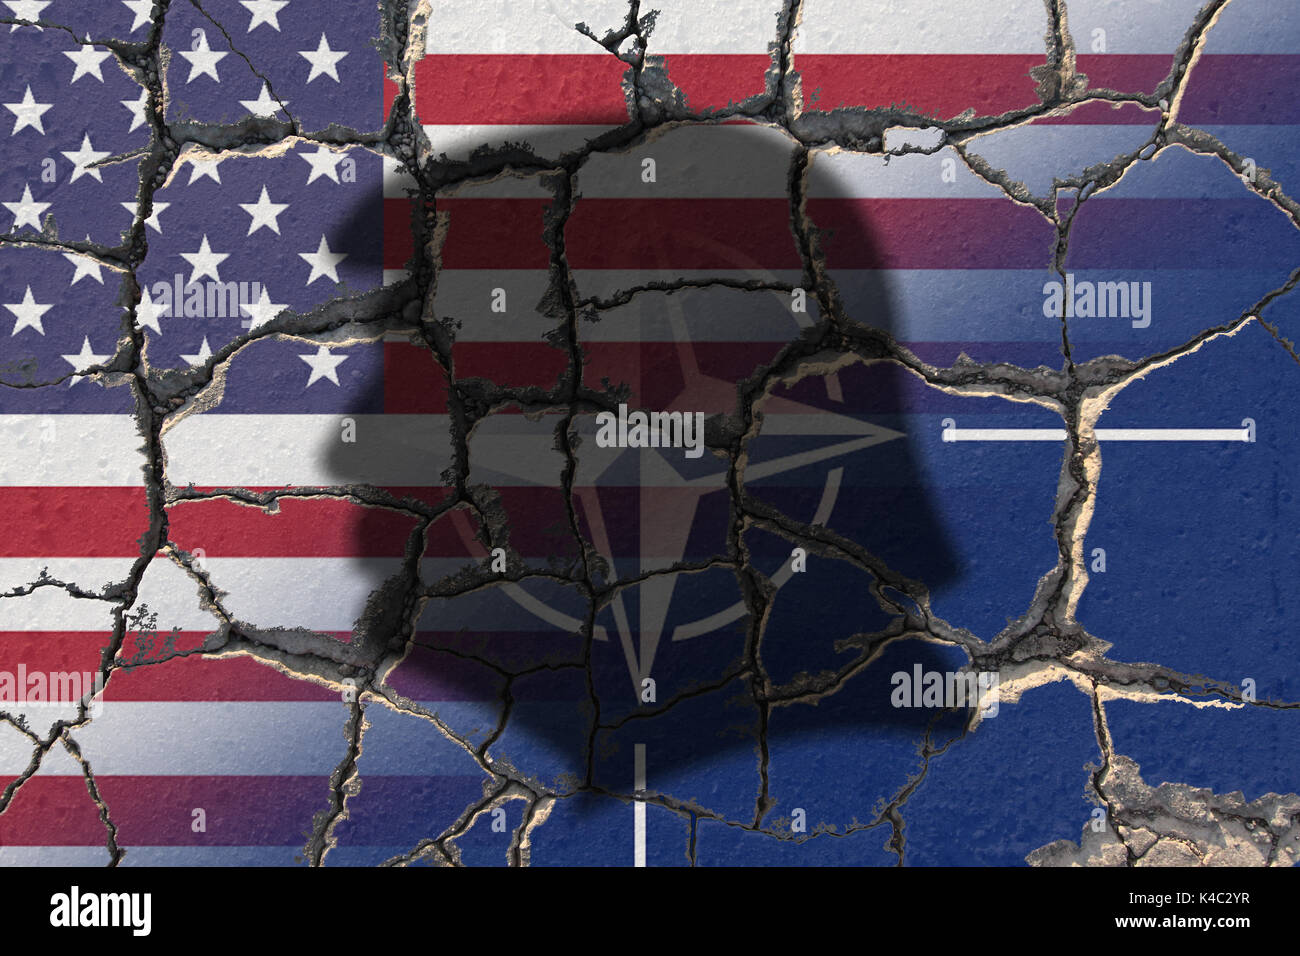 Donald Trump Schatten Mit Erodierenden Nato Otan Und Us Flag Stockfotografie Alamy